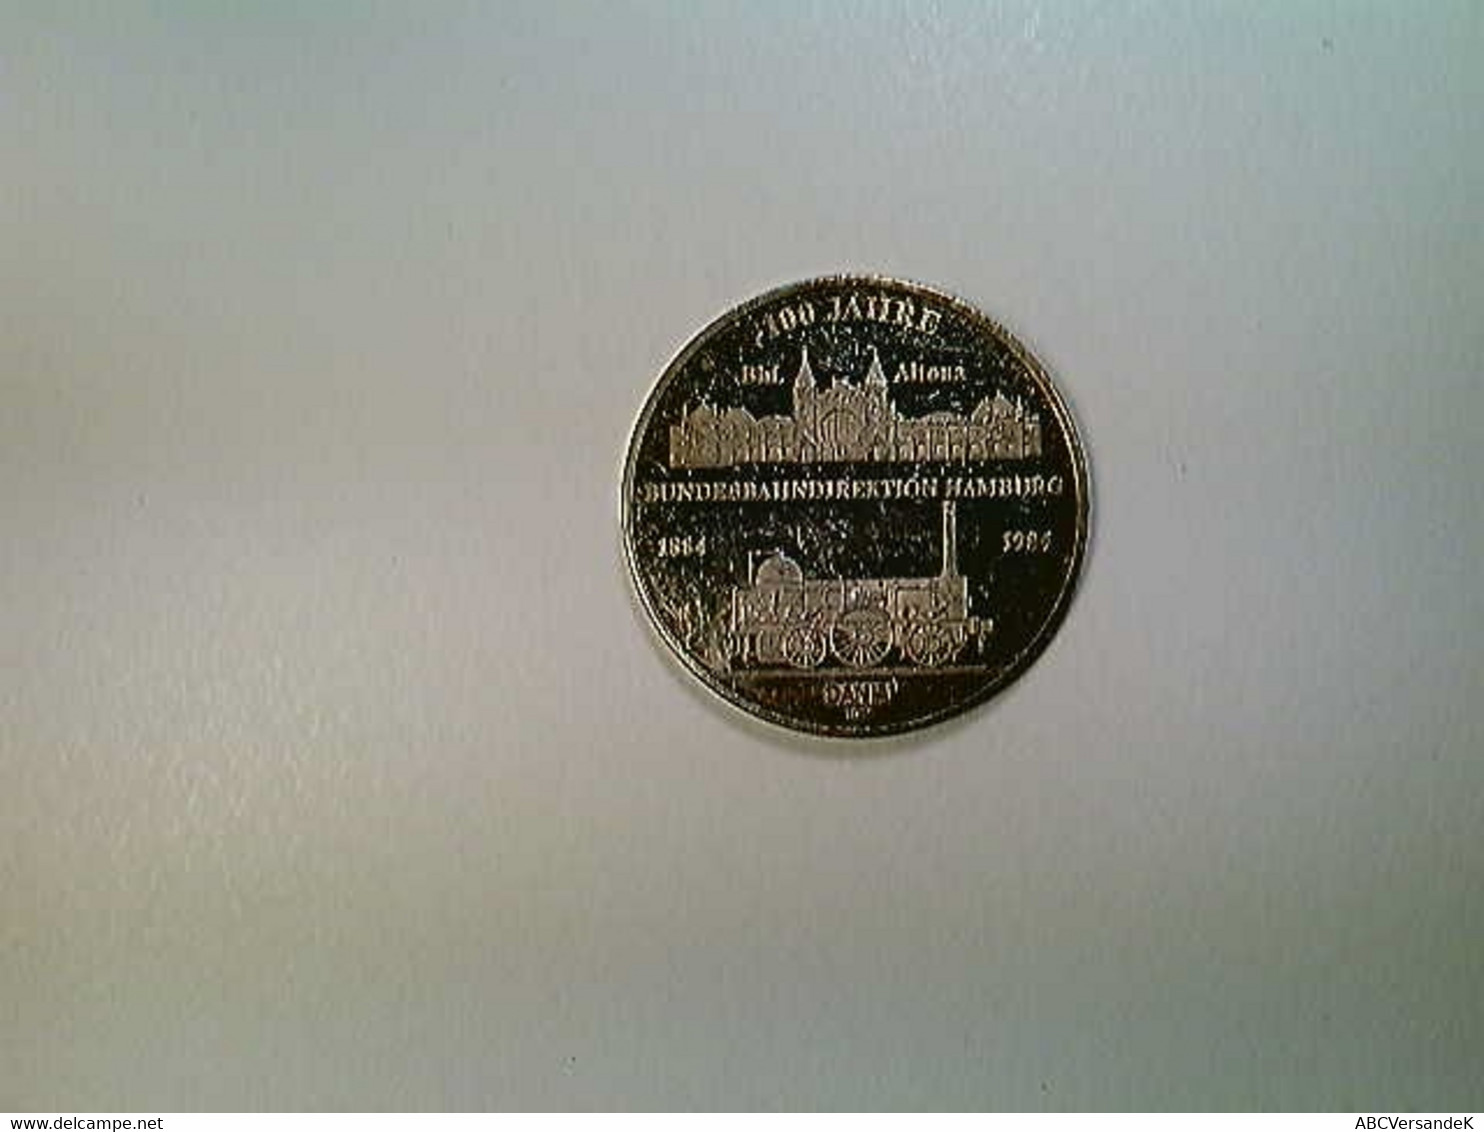 Medaille Hamburg 100 Jahre Bundesbahndirektion 1884-1984, Silber 1000 - Numismatiek